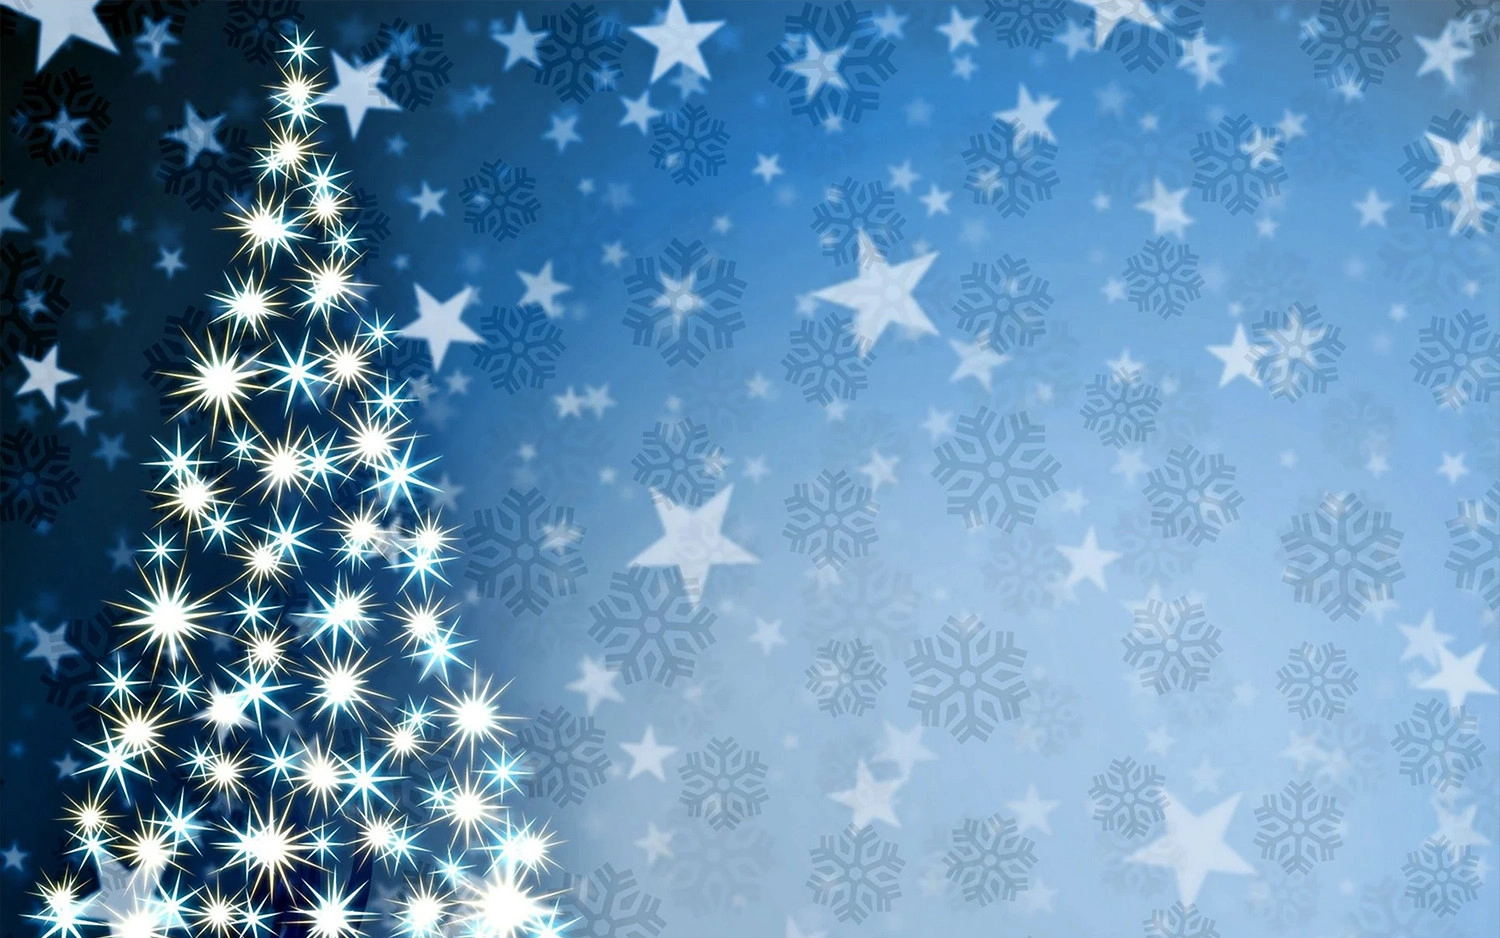 Hình nền Giáng Sinh màu xanh dương lấp lánh